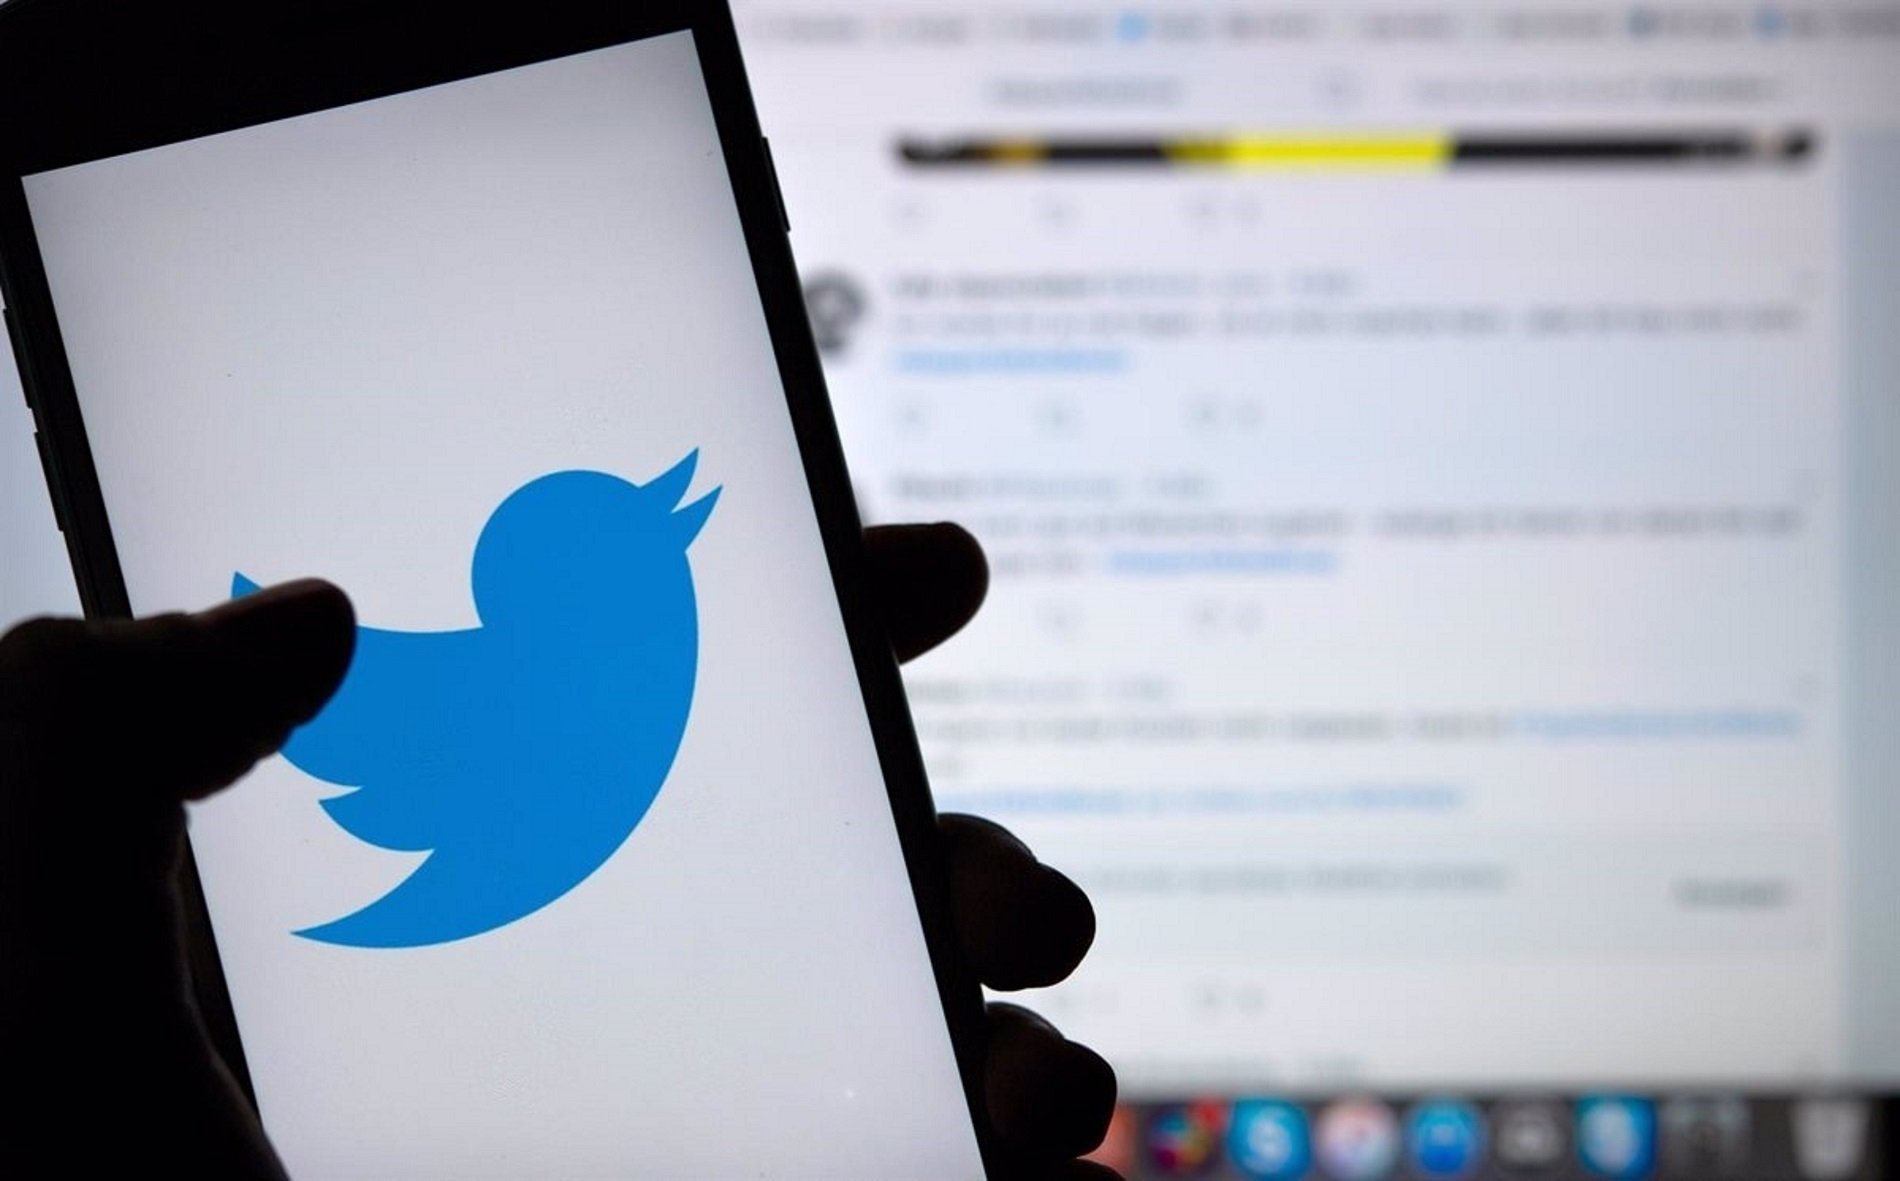 Problemes a Twitter: els usuaris informen que l'aplicació no funciona correctament